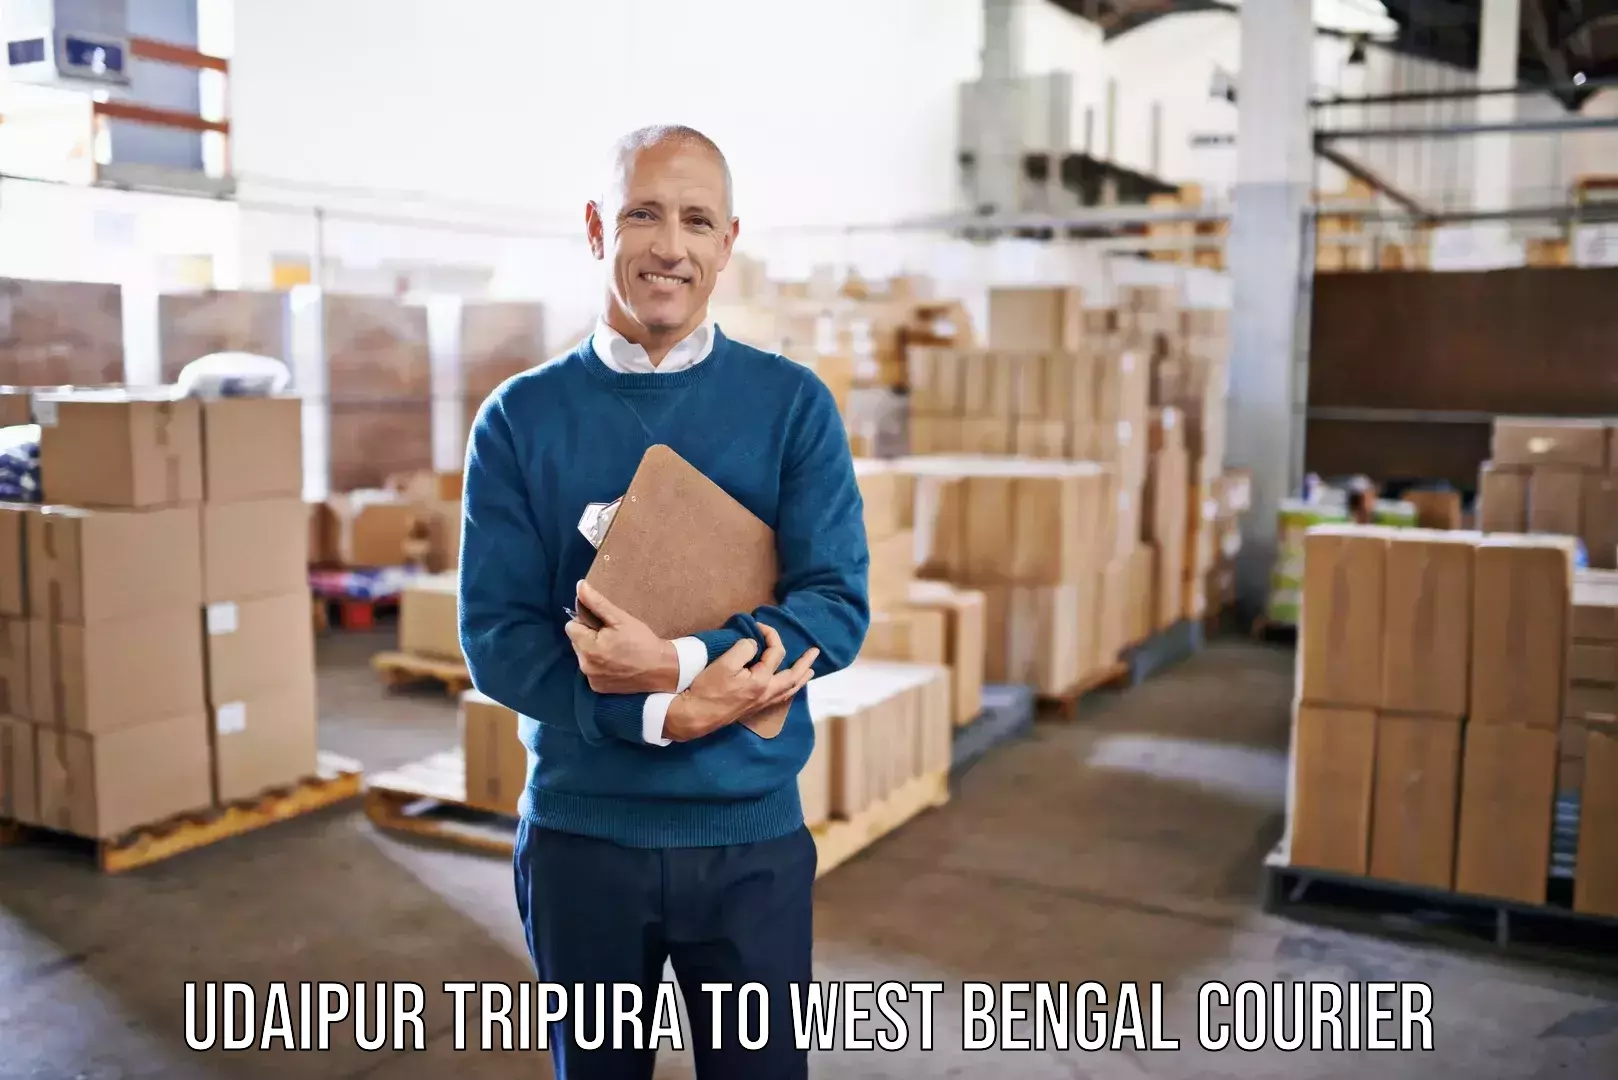 Furniture delivery service Udaipur Tripura to Mekhliganj